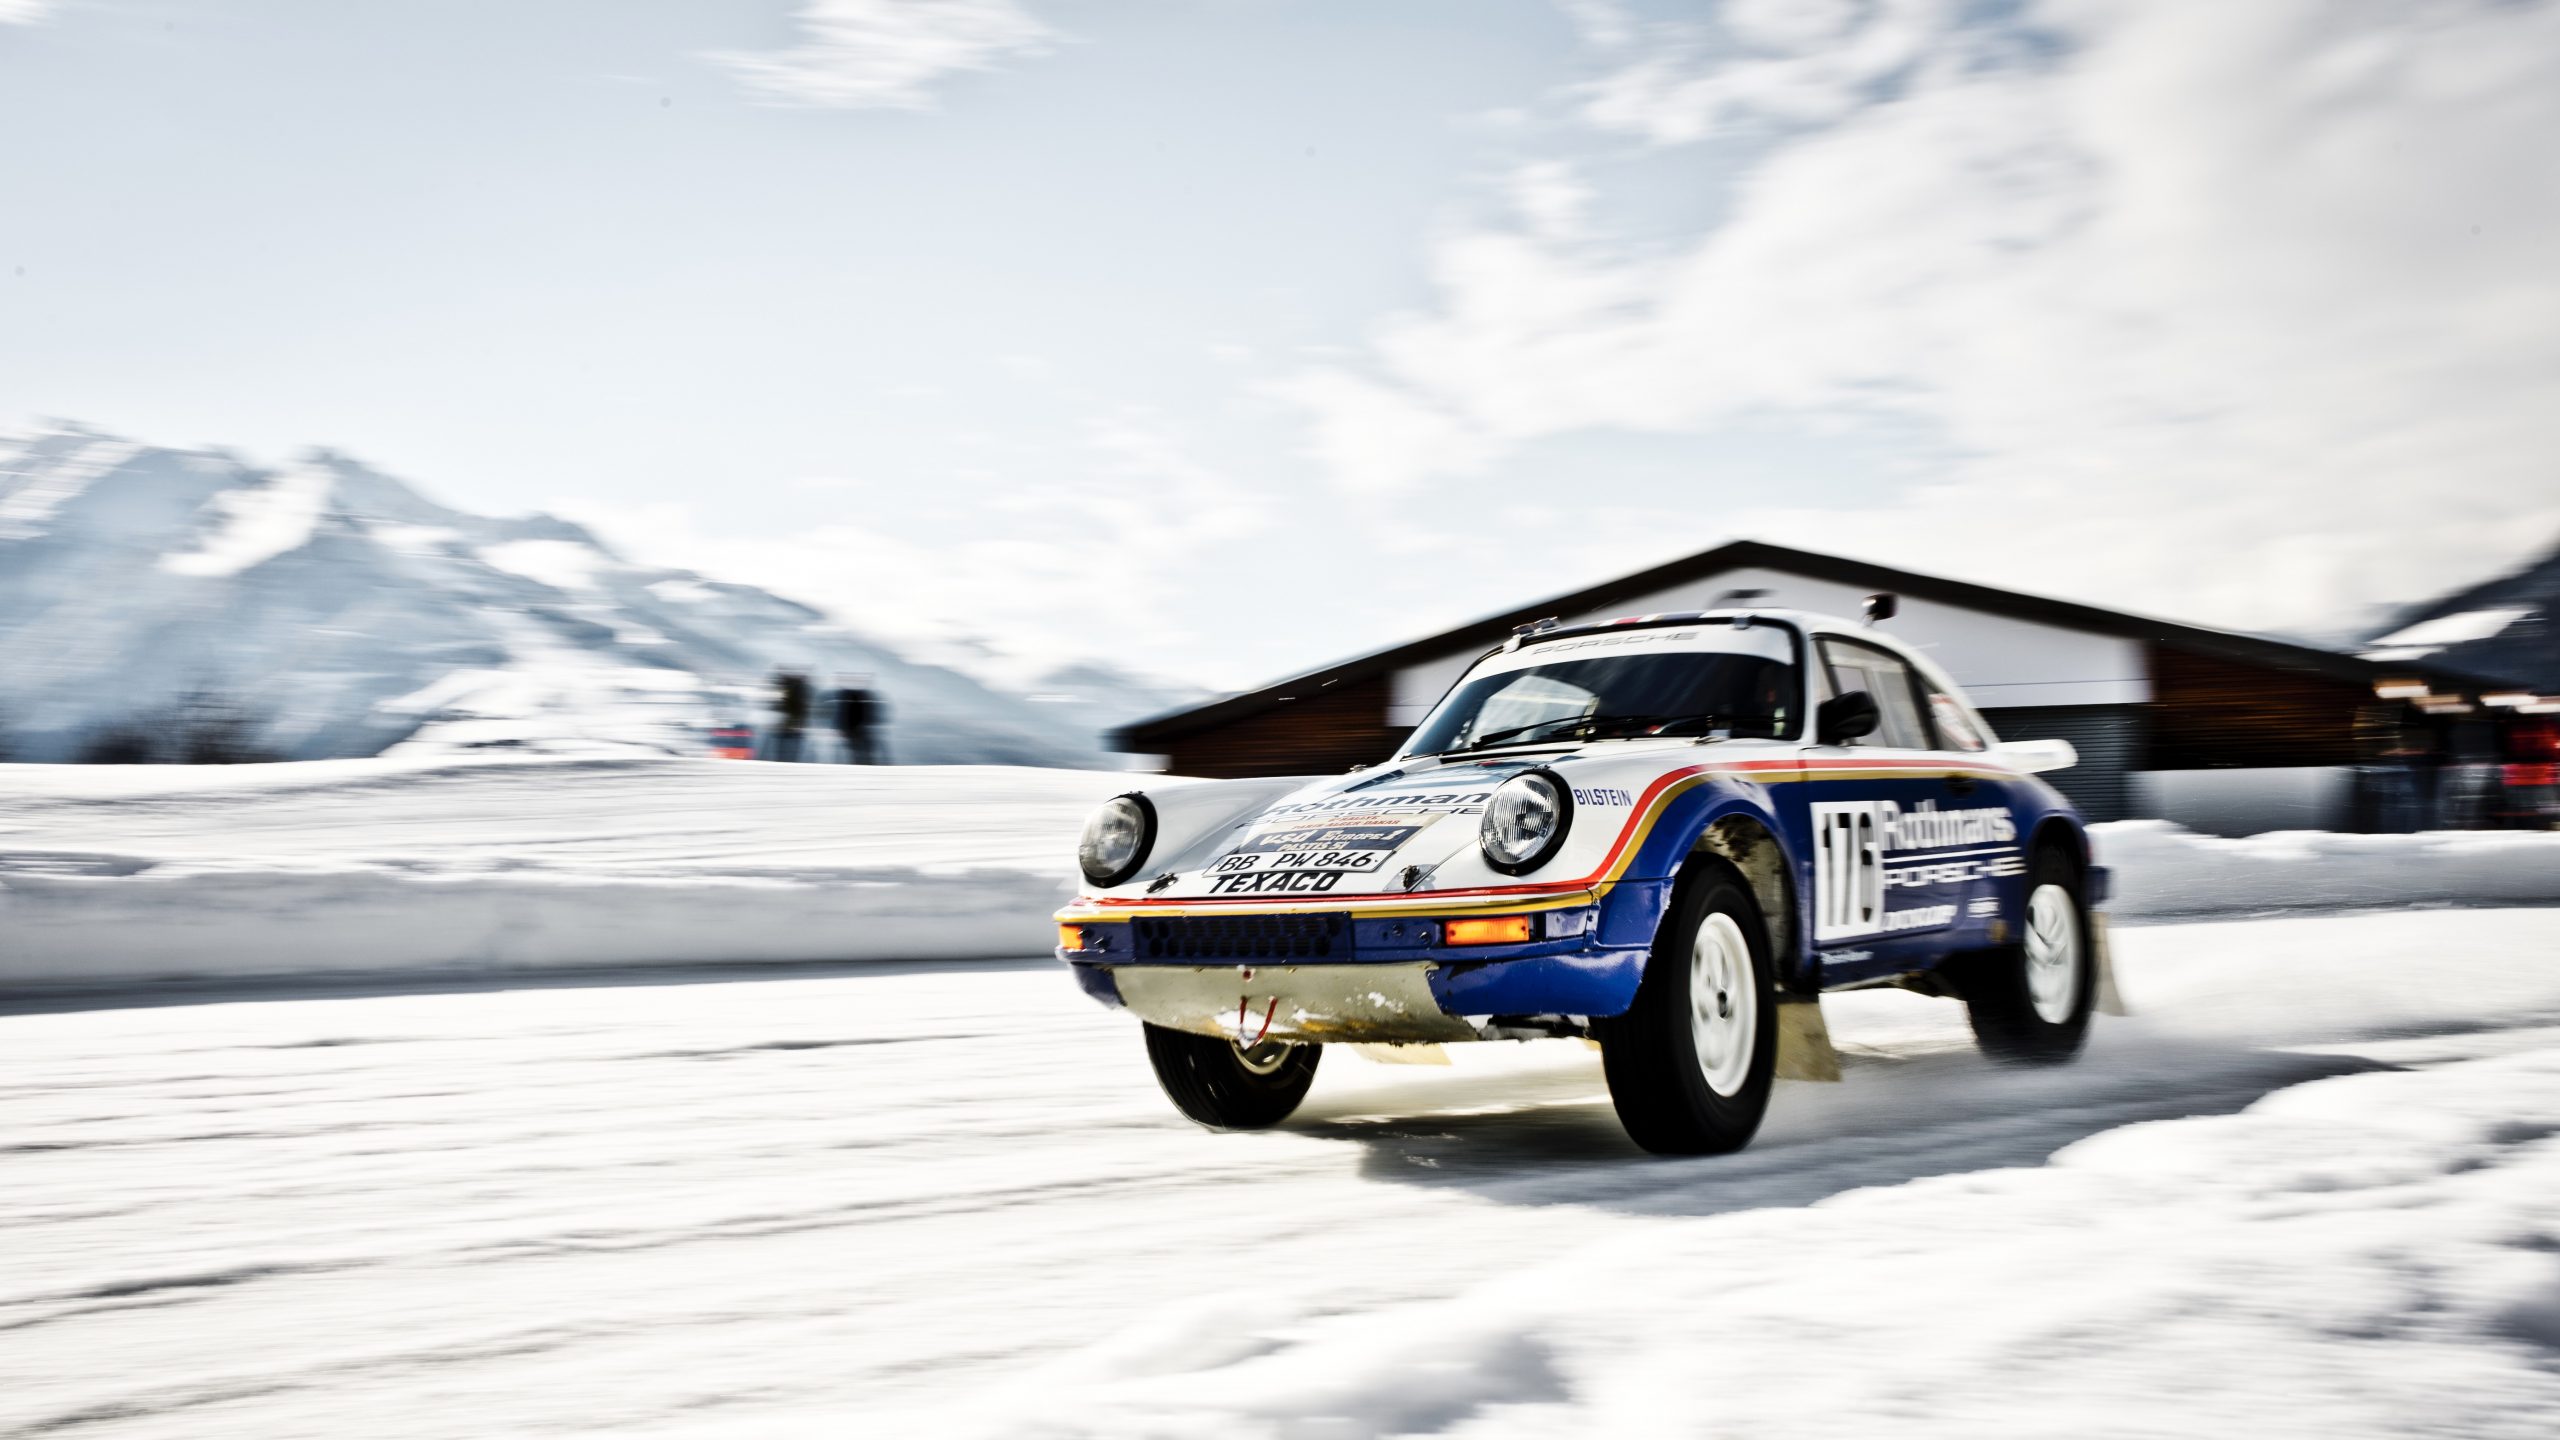 Watch Walter Röhrl drifting the Paris-Dakar Porsche 953 on ice